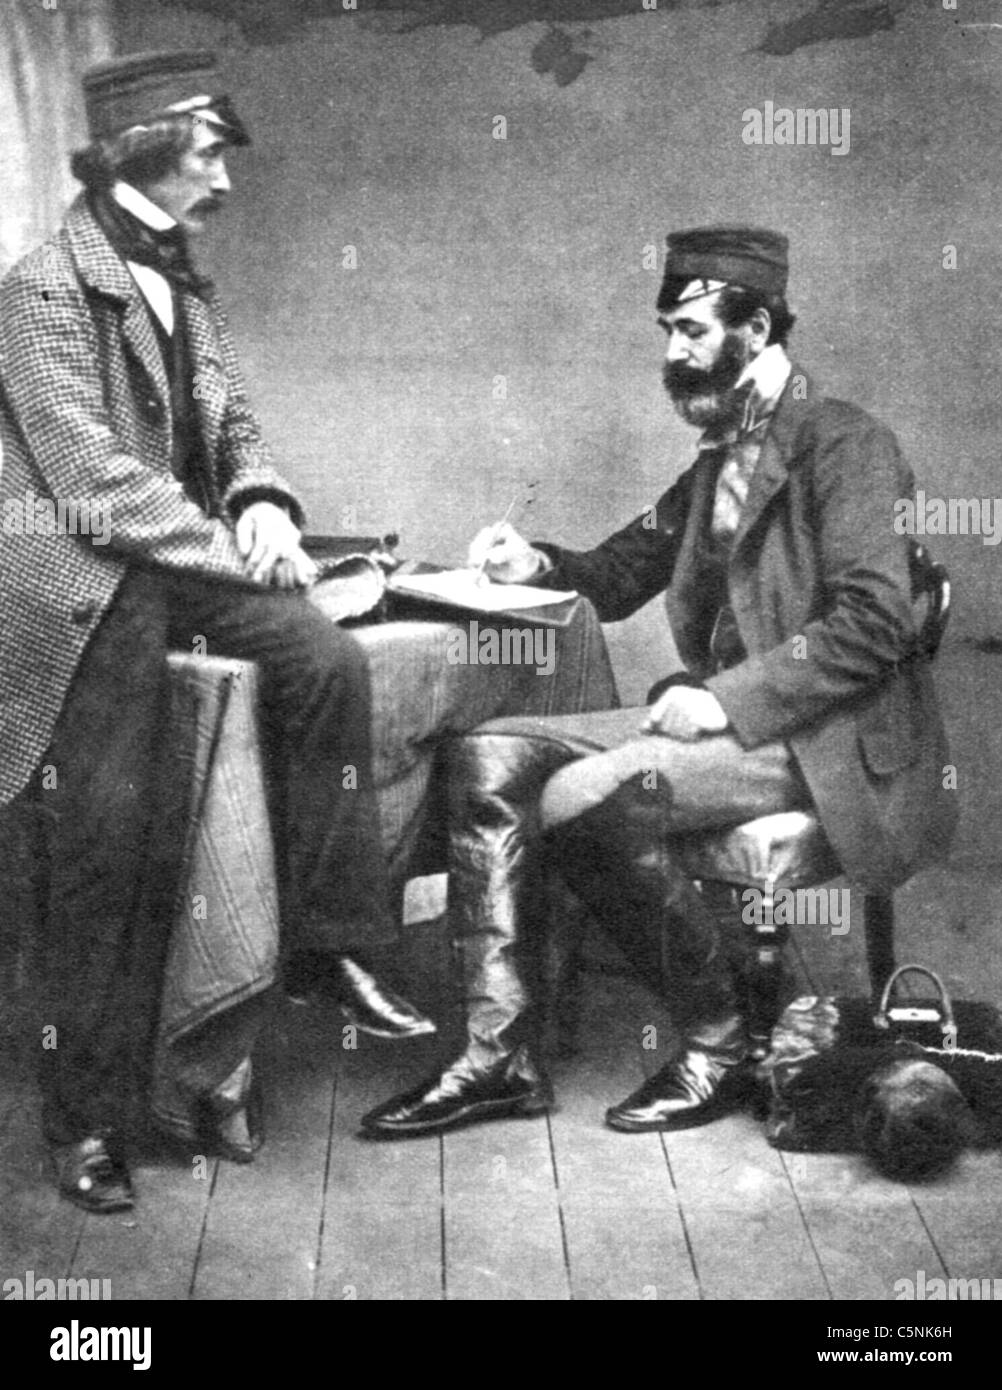 Guerre de Crimée (1853-1856) Commission sanitaire envoyé à la Crimée en 1855 photographié par Roger Fenton. Voir la description ci-dessous Banque D'Images